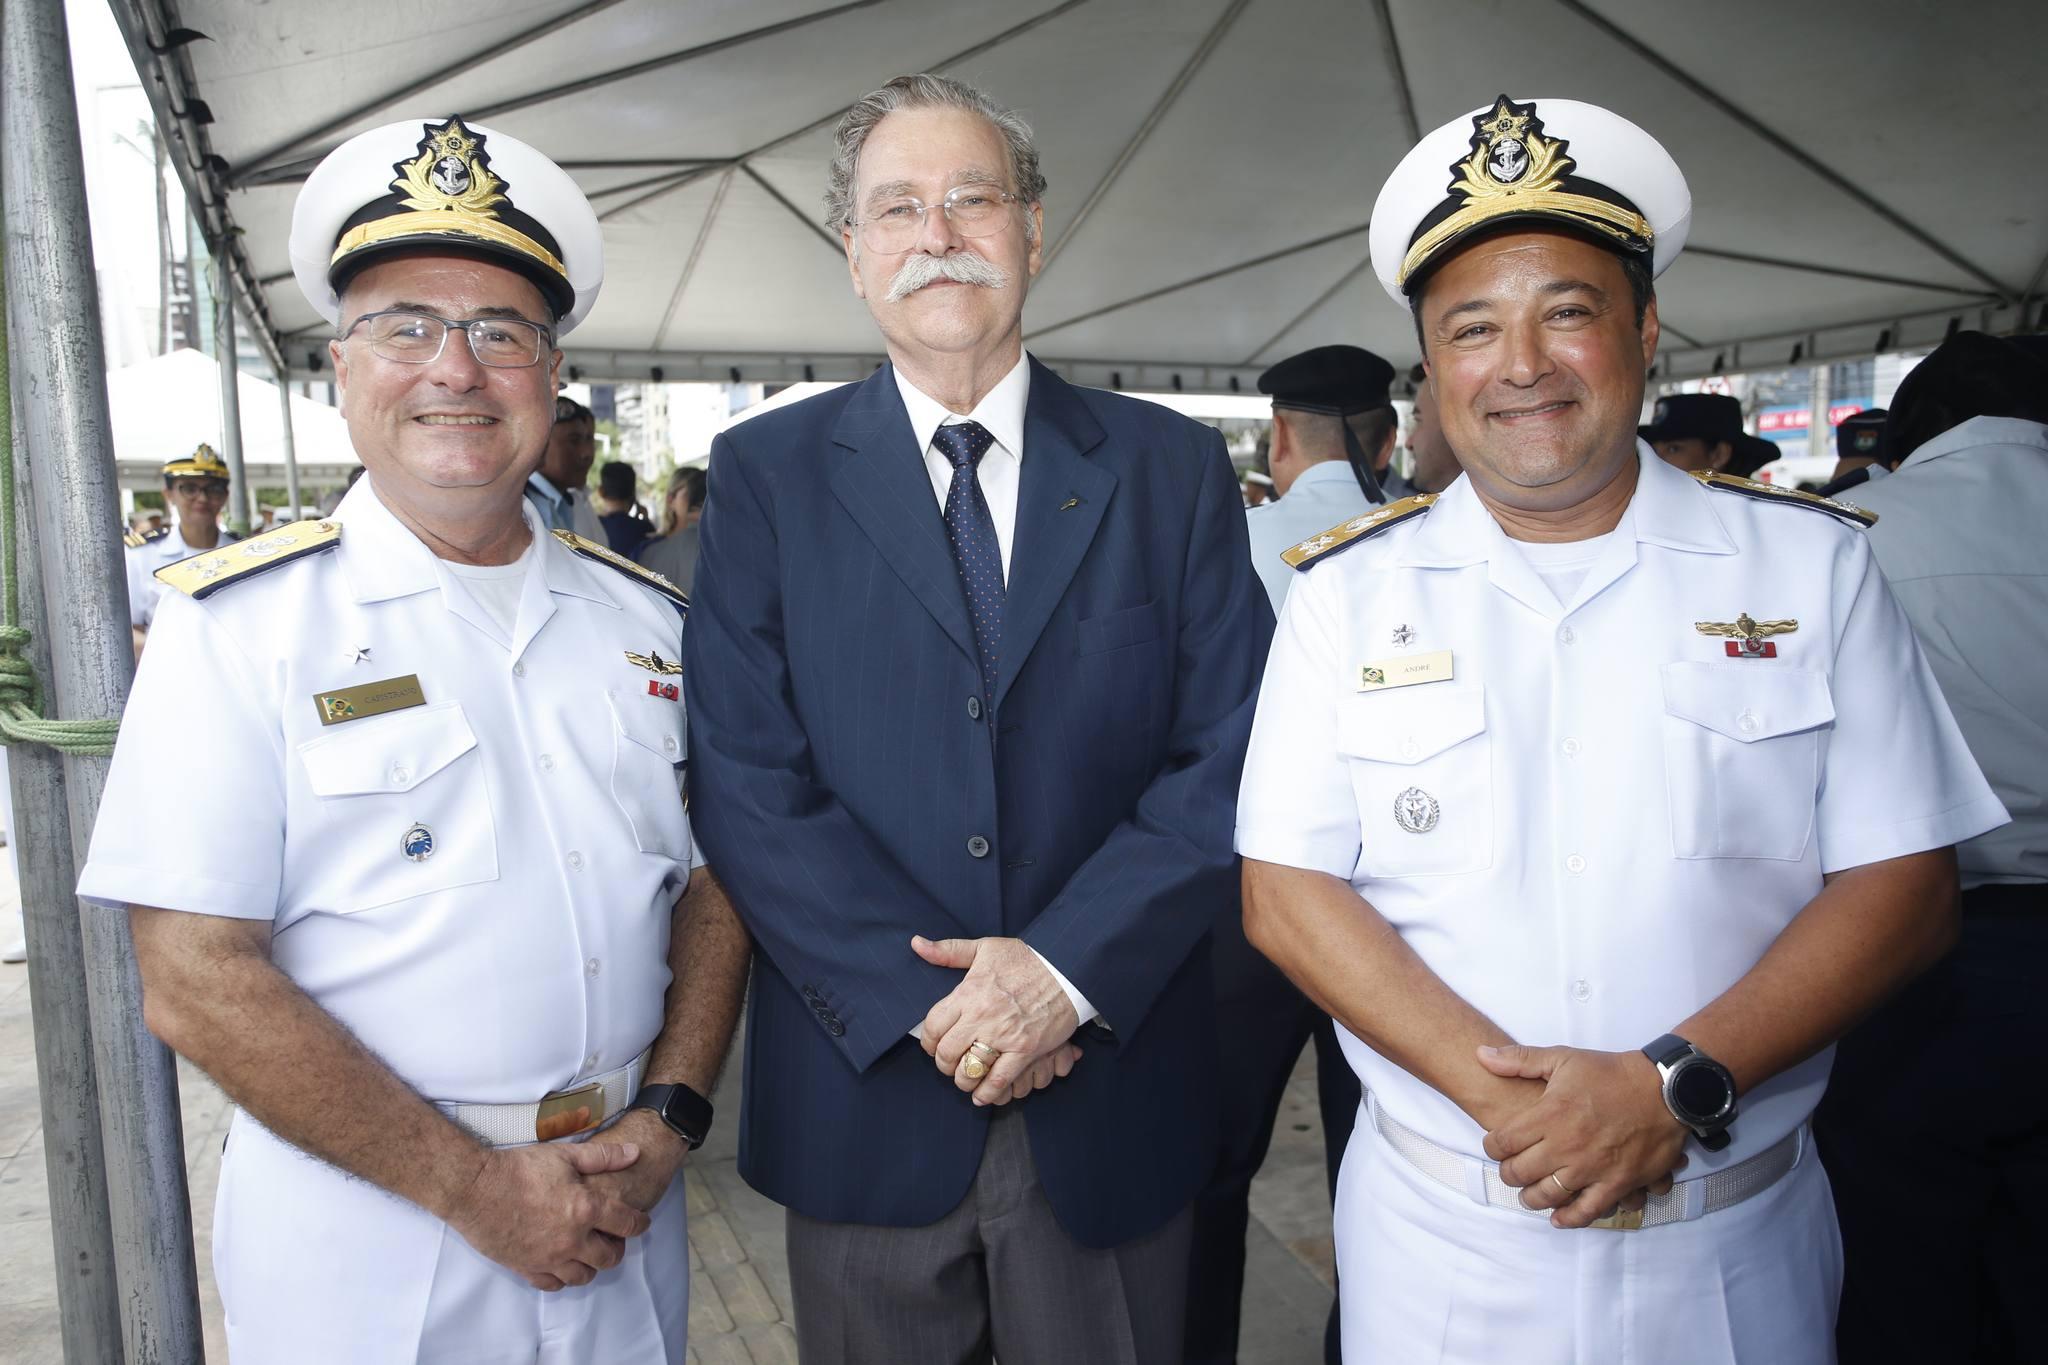 Almirante Antônio Capistrano, Antônio Carlos Juaçaba e Almirante André Moraes Ferreira